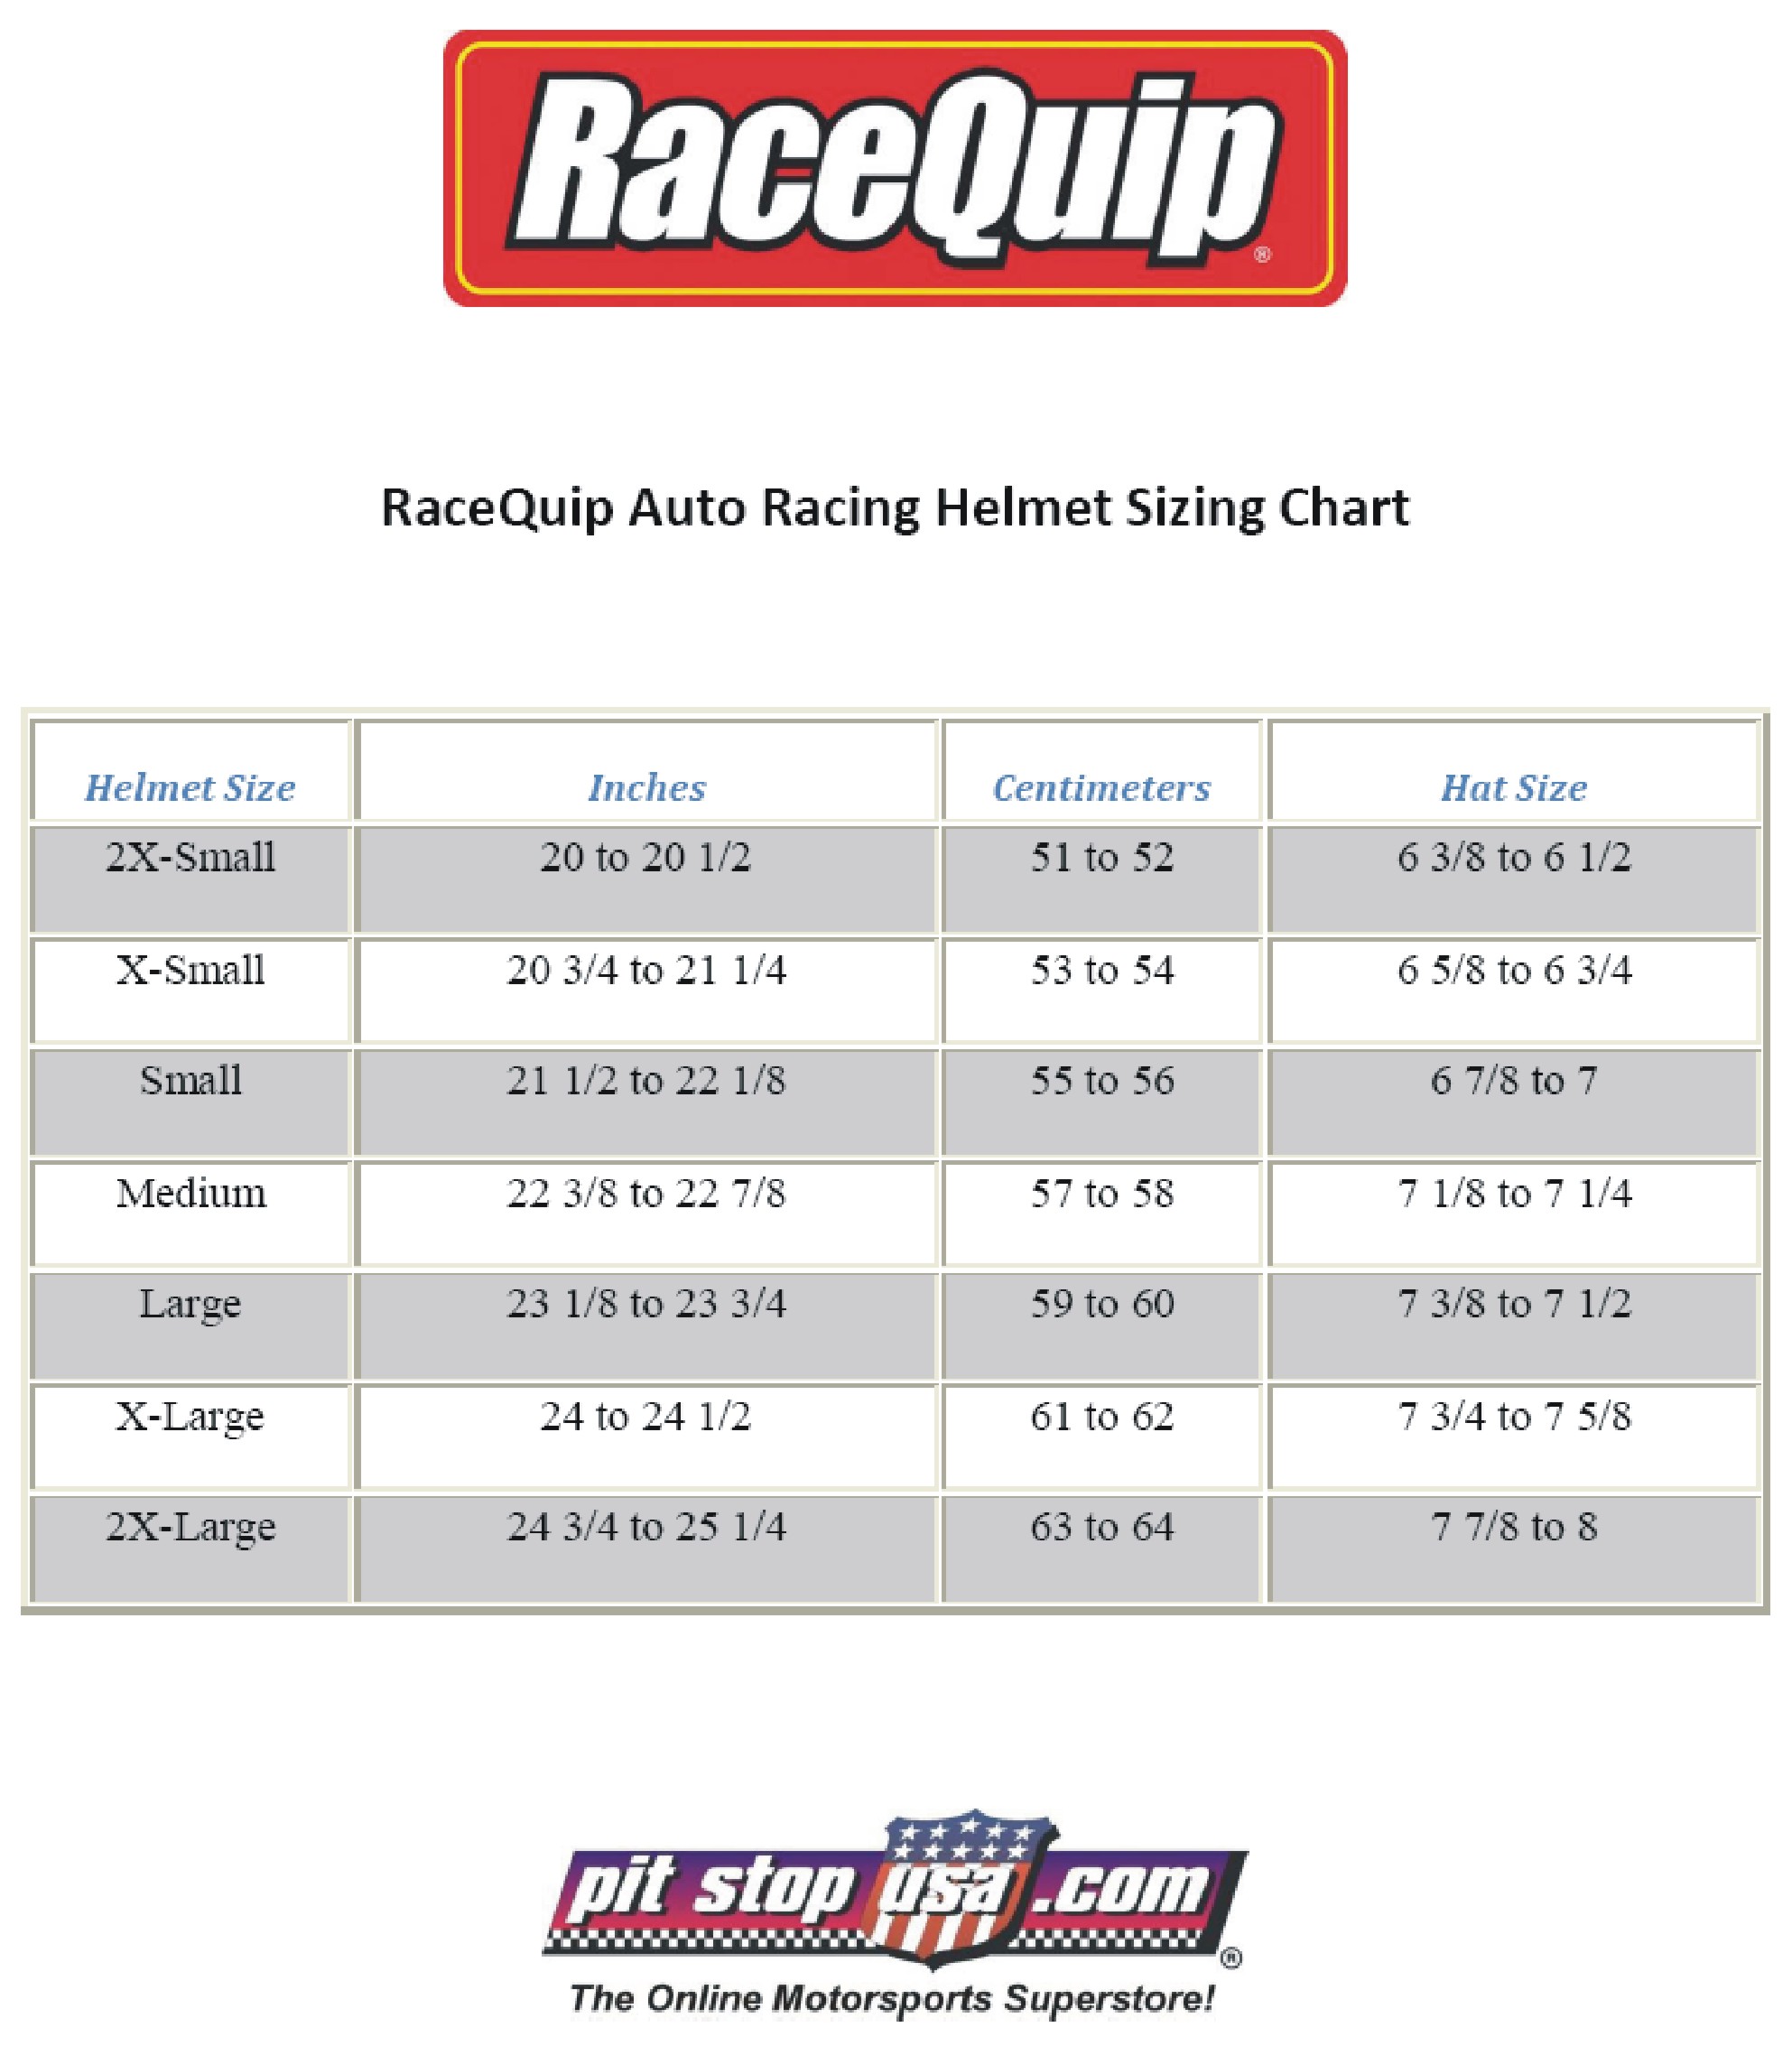 RaceQuip Auto Racing Helmet Sizing Chart